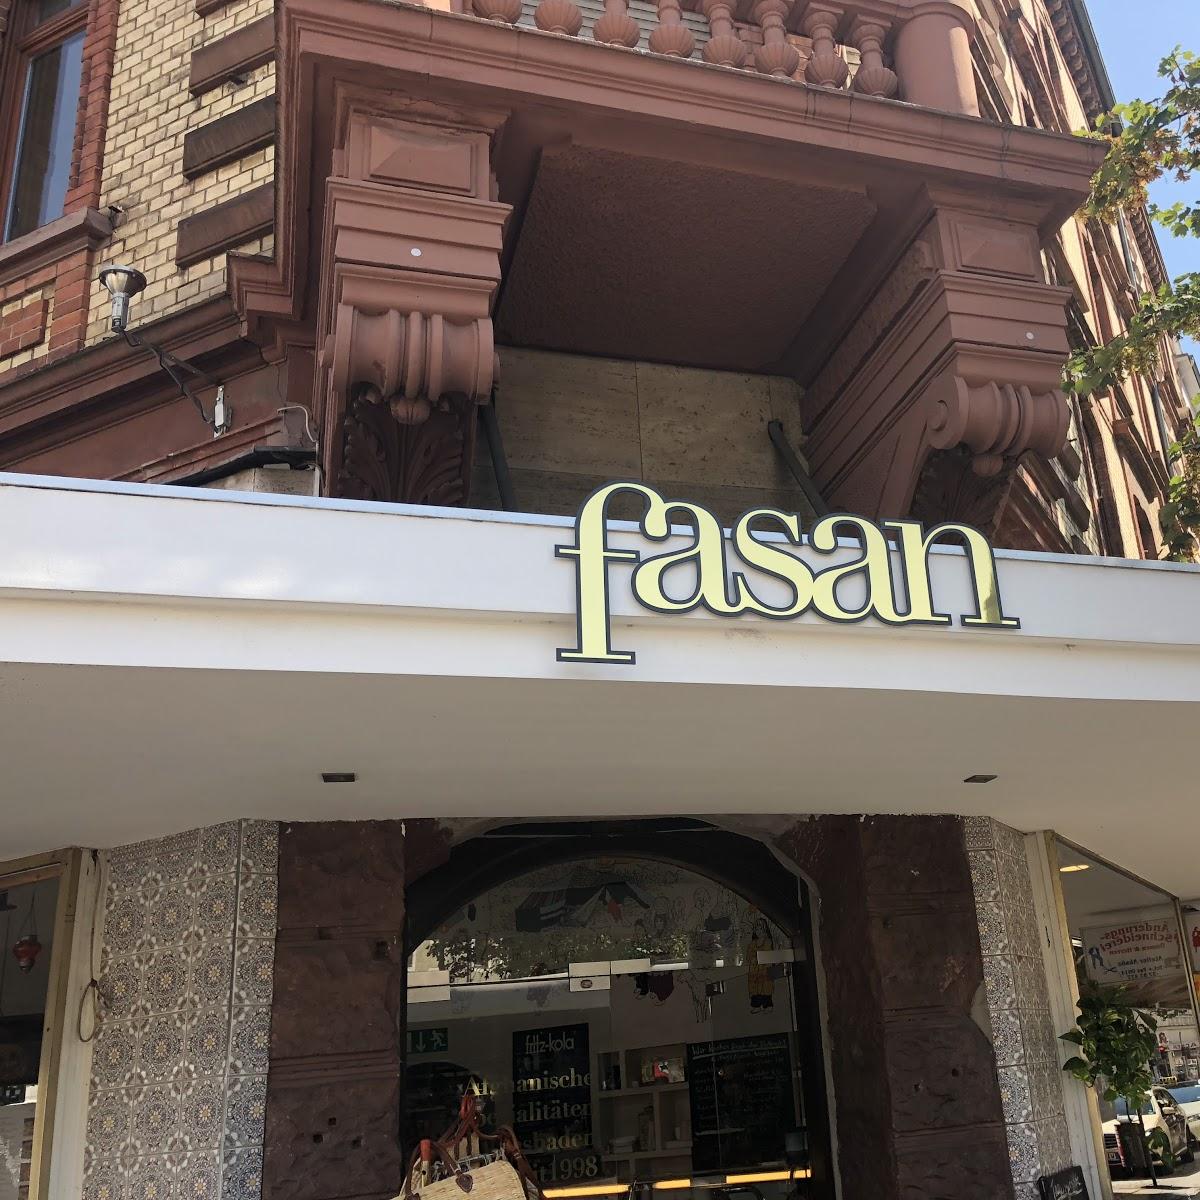 Restaurant "Fasan" in Wiesbaden